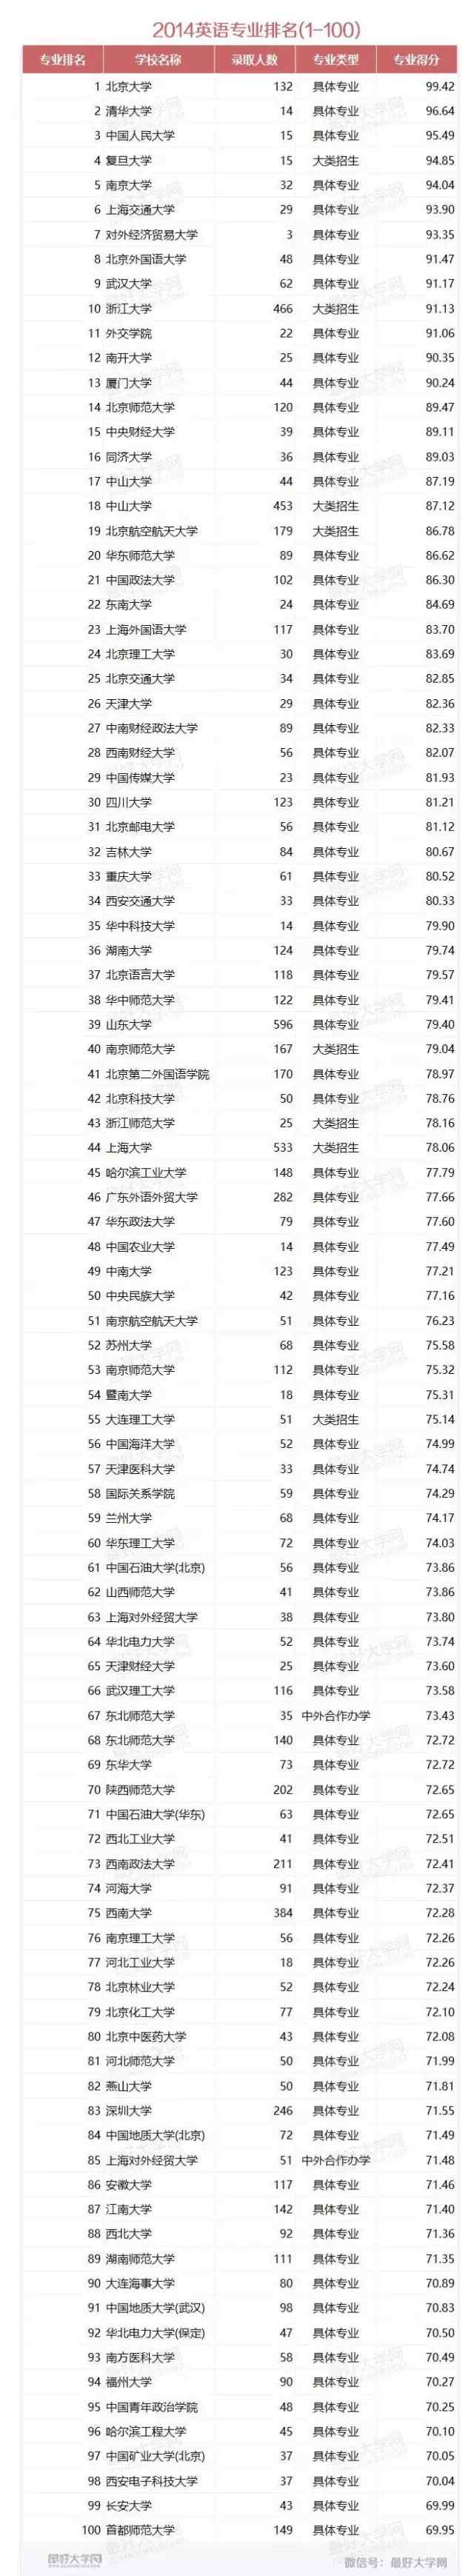 英语专业好的大学排名 中国大学英语专业排名200强！